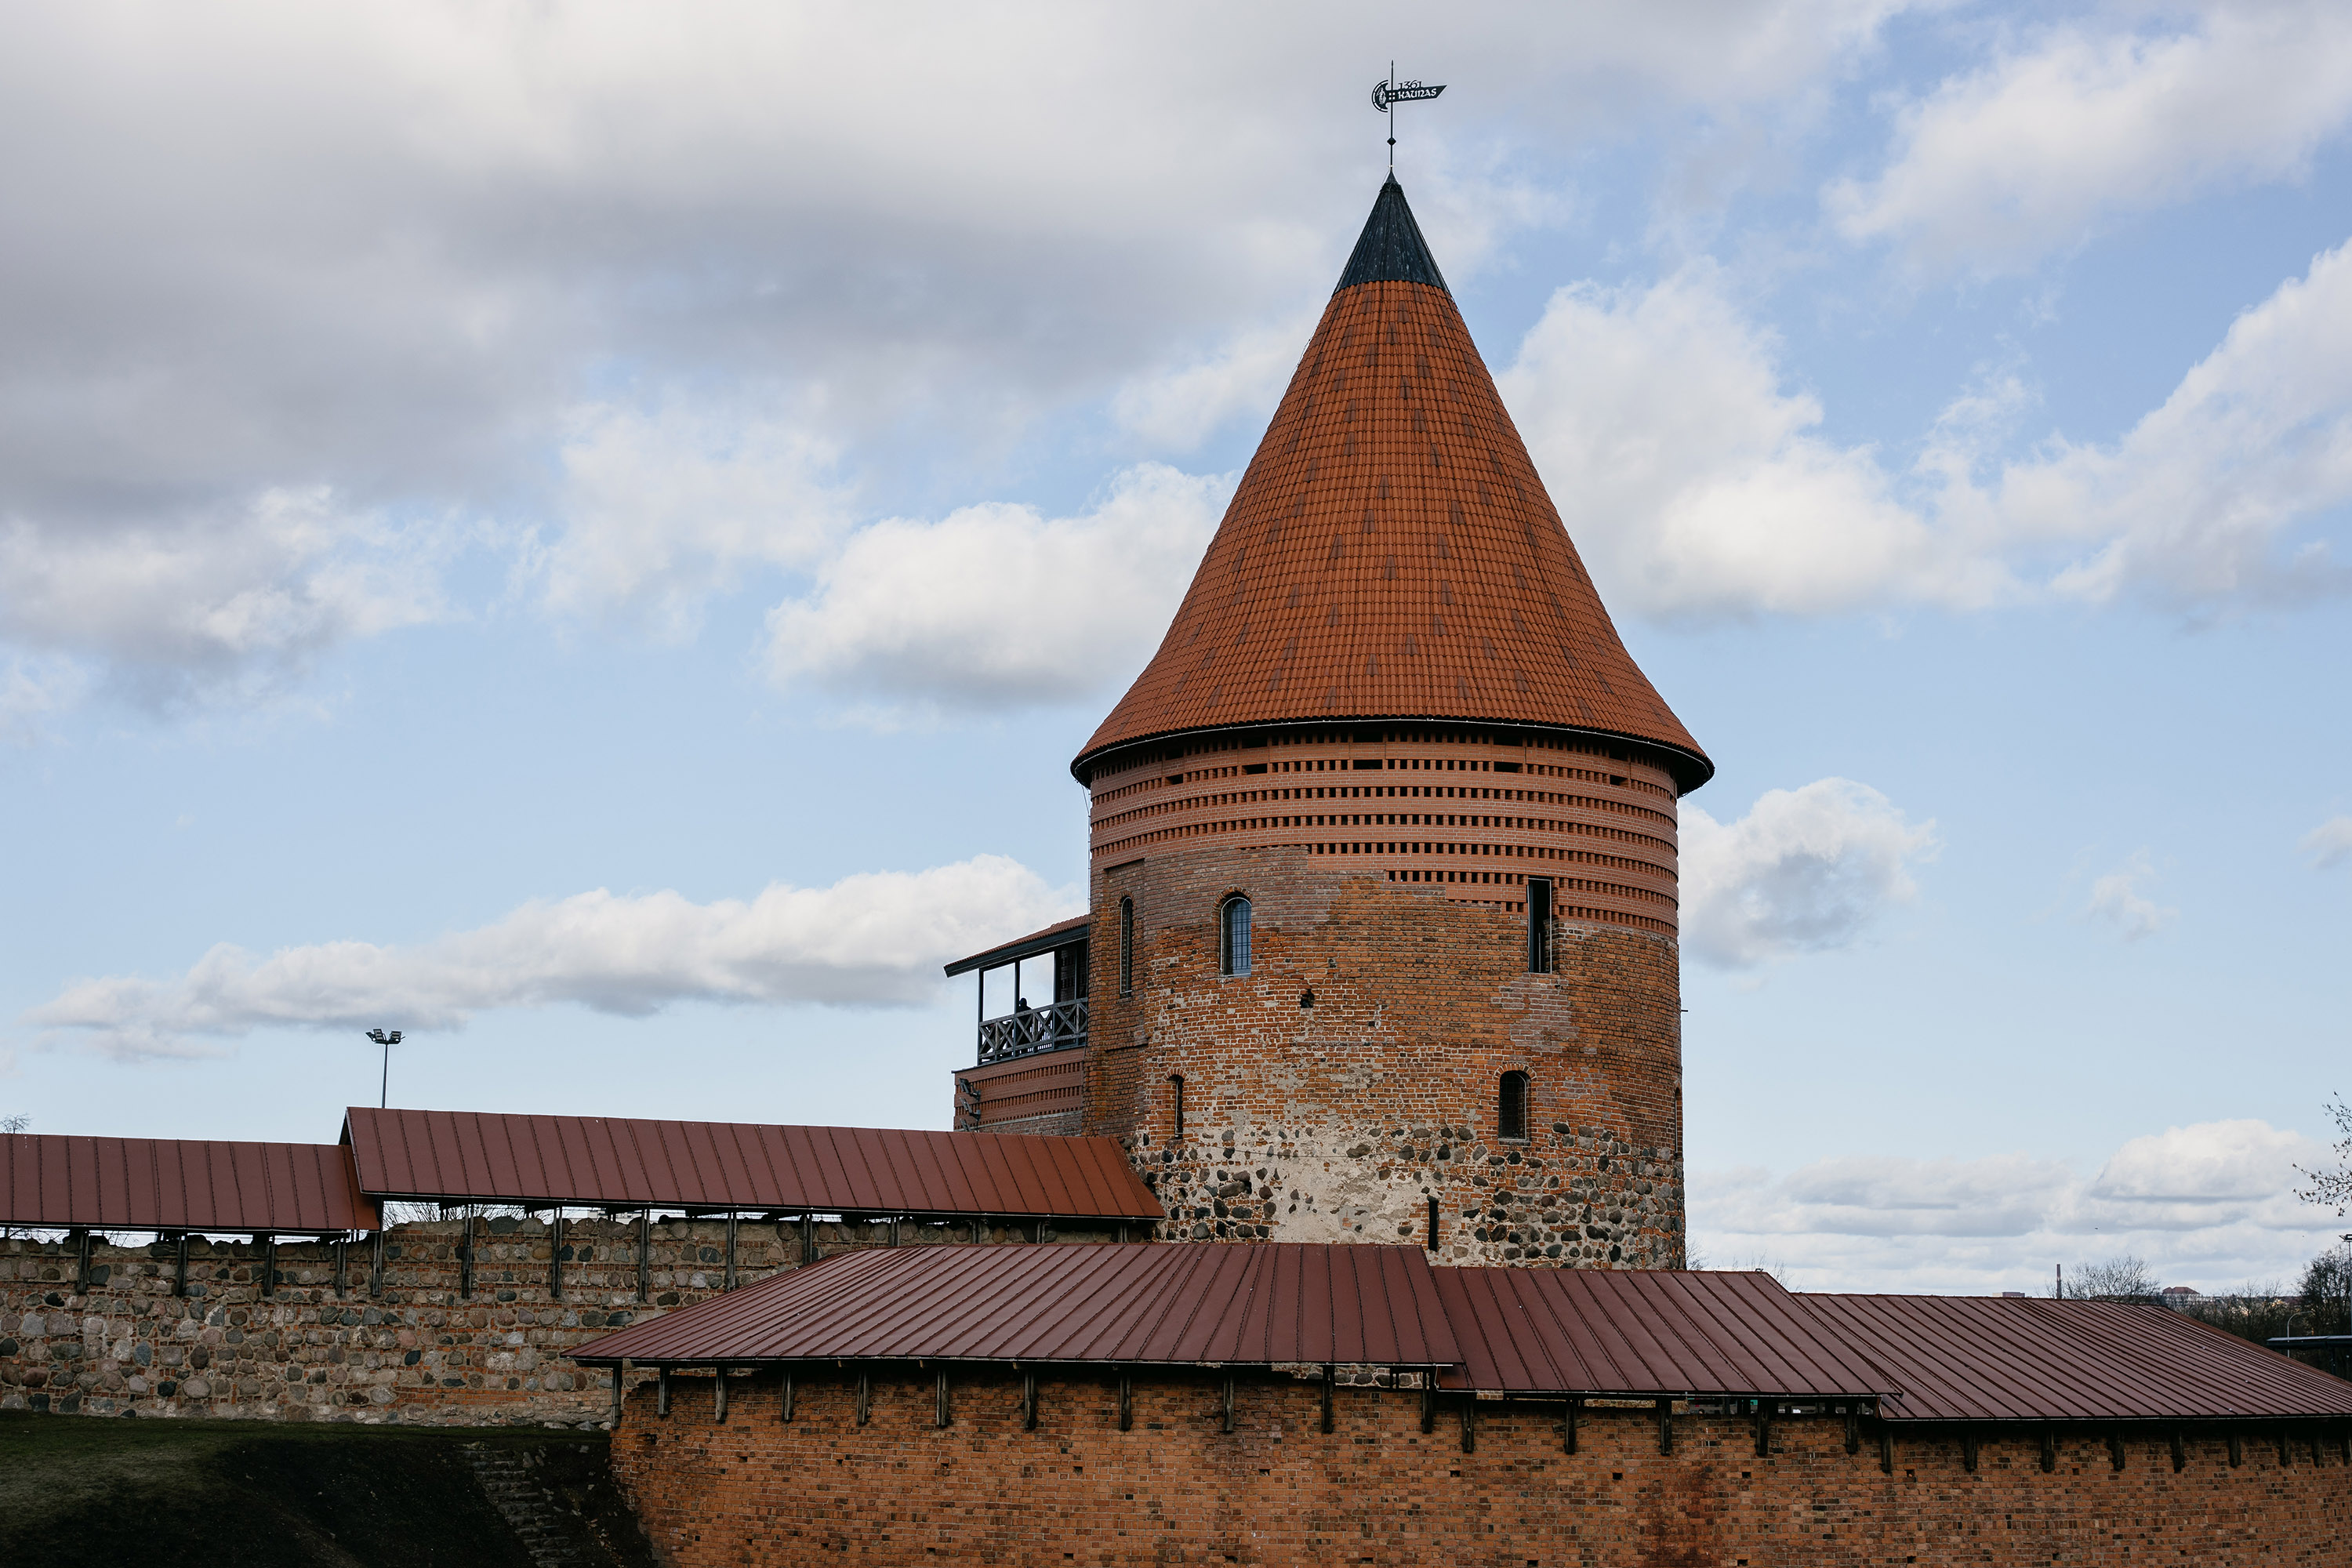 Kaunas castle - Lithuania. Shot at f4